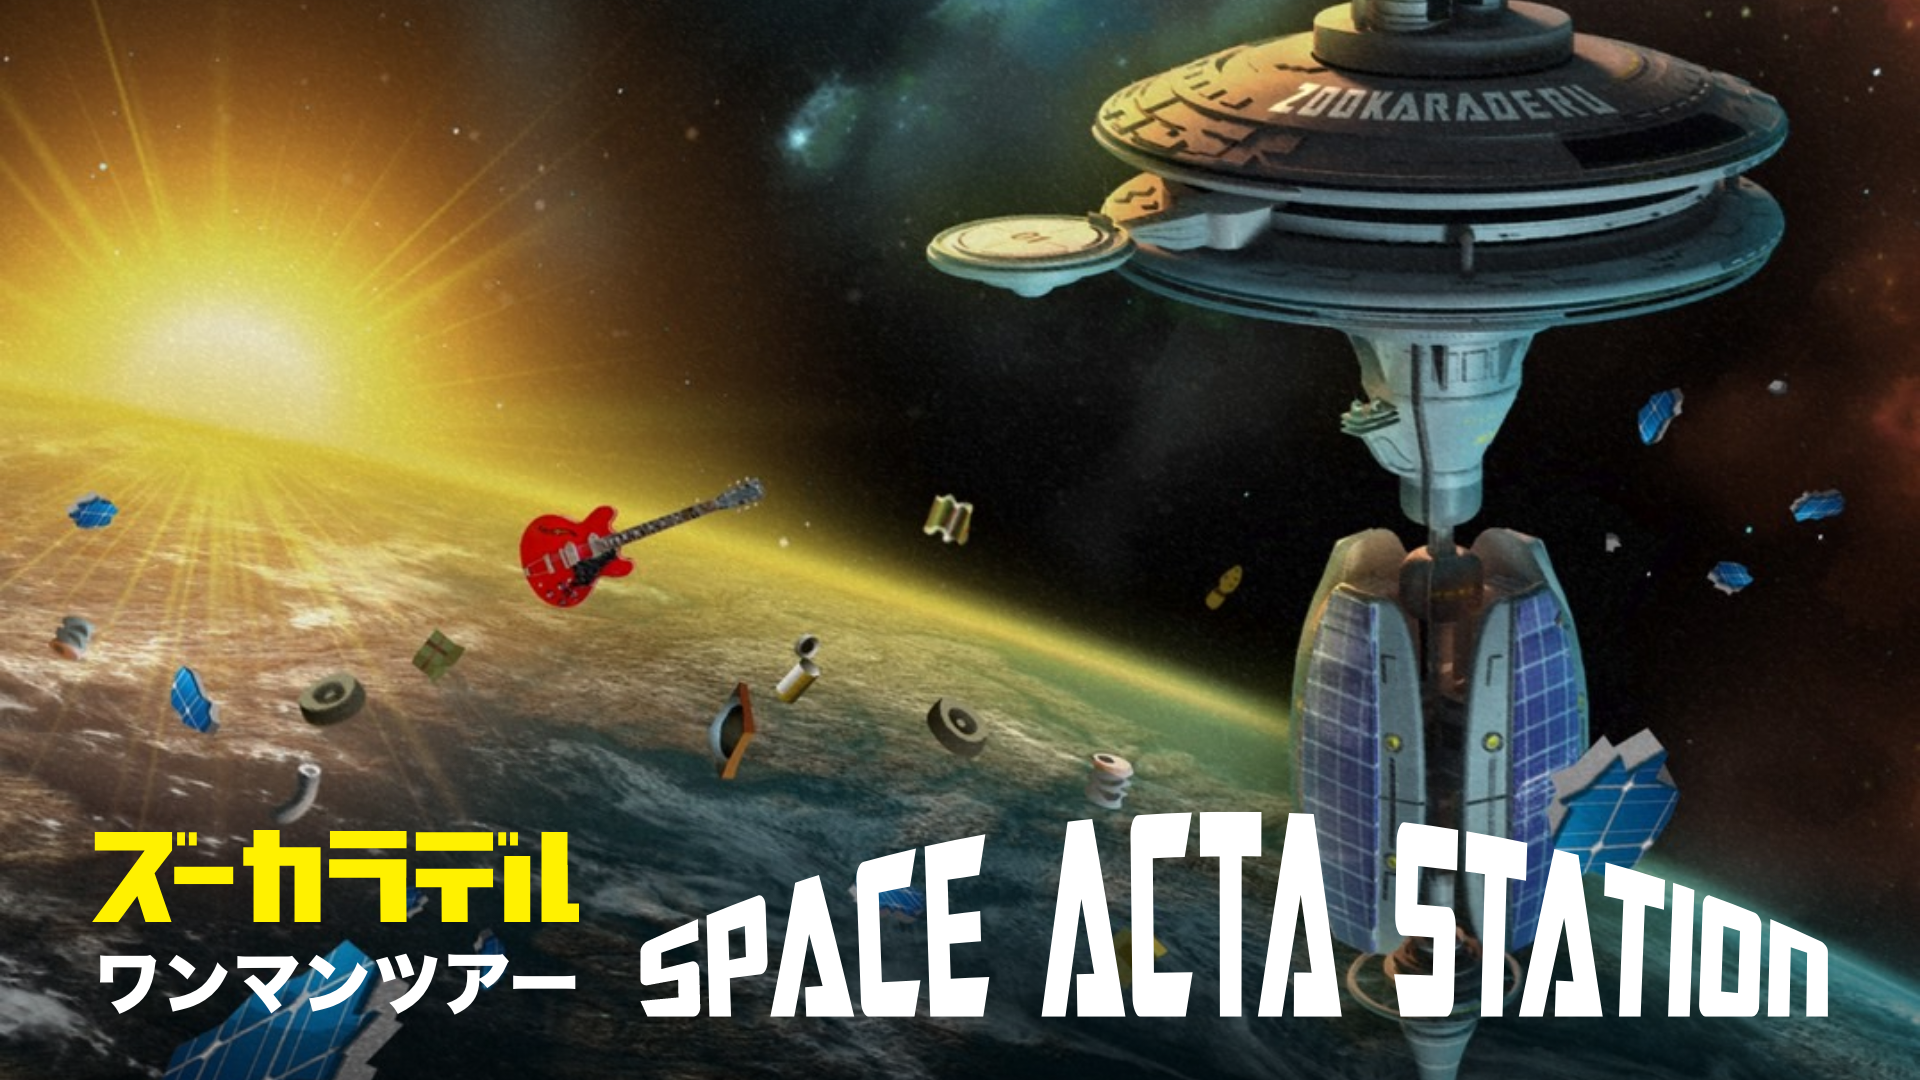 ズーカラデル ワンマンツアー「SPACE ACTA STATION」